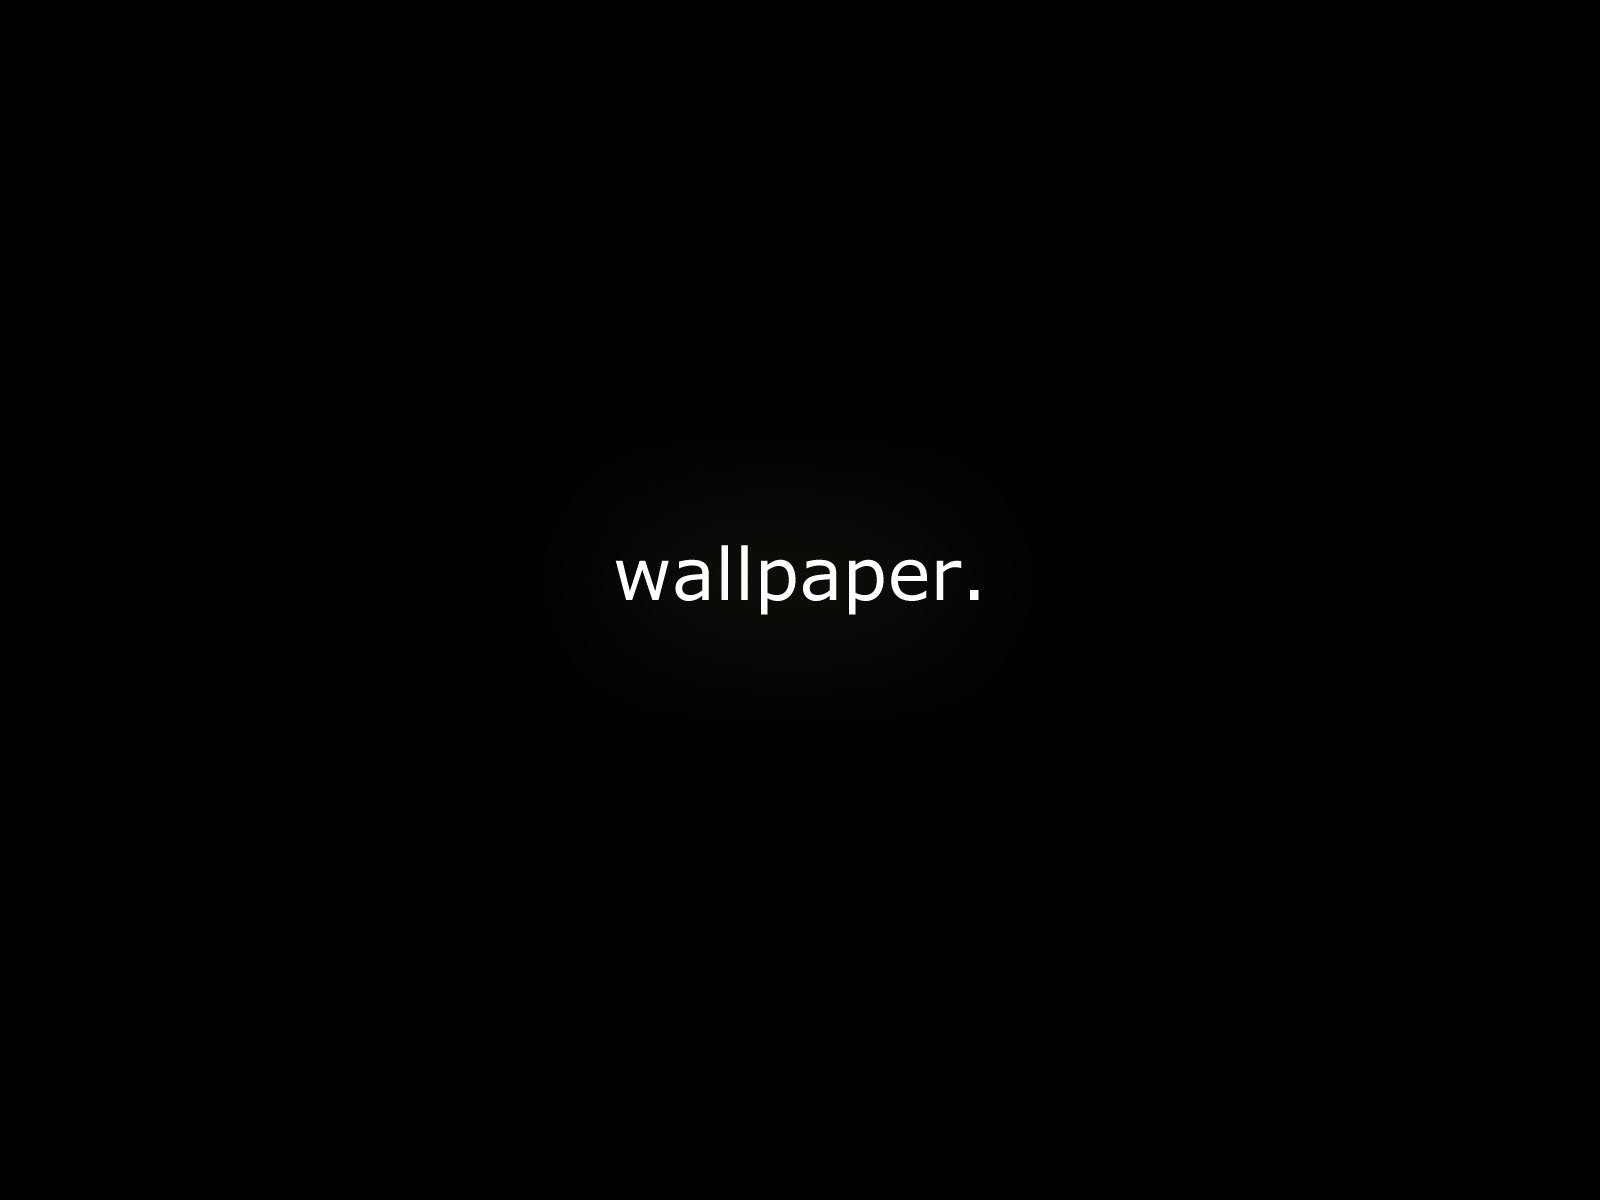 [50+] Pierce The Veil Wallpapers | WallpaperSafari